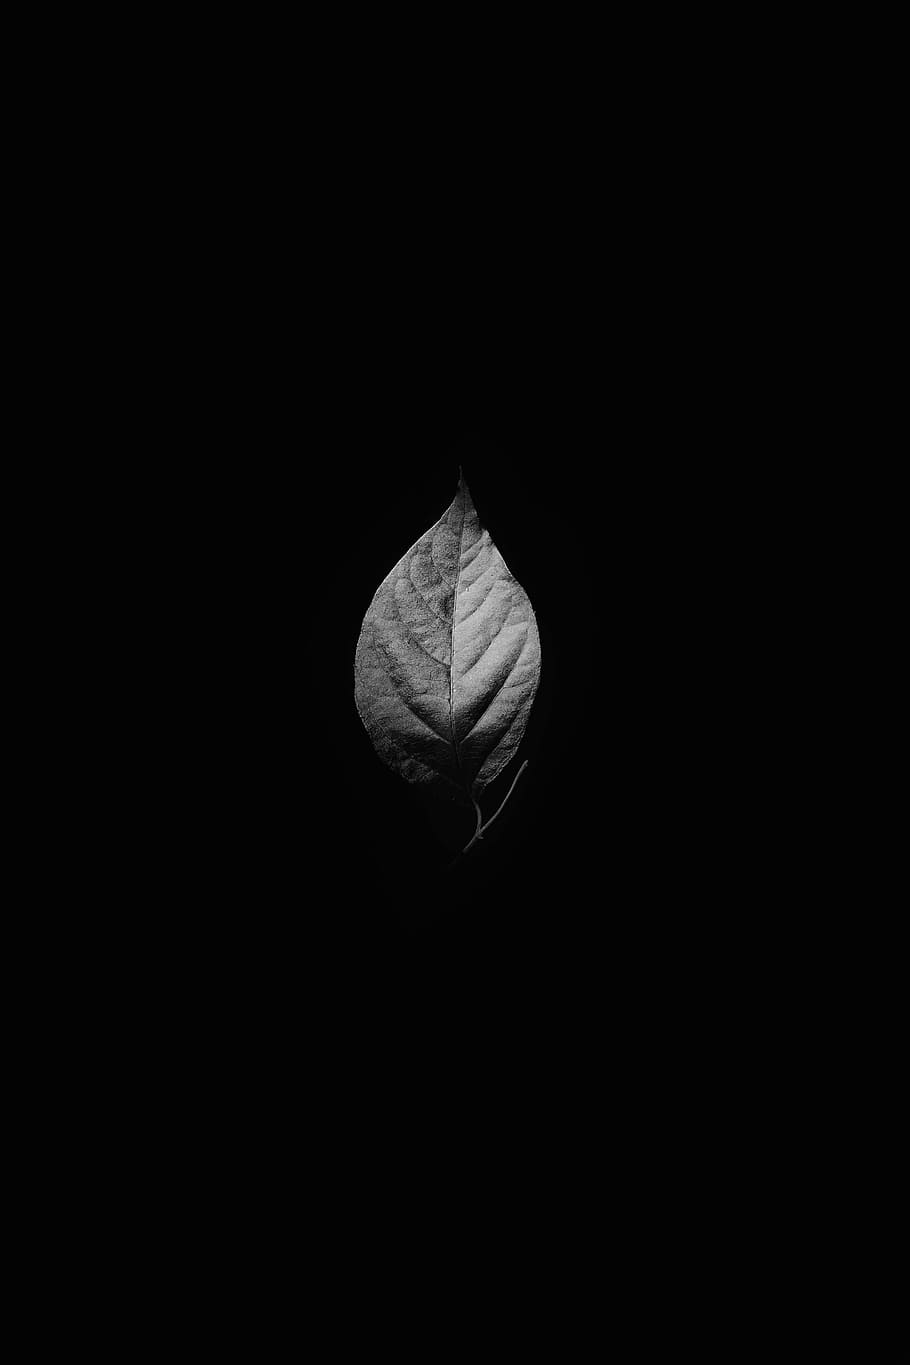 Fotografía en escala de grises, hoja, hojas, planta, naturaleza, venas, blanco y negro, monocromo, oscuro, color negro